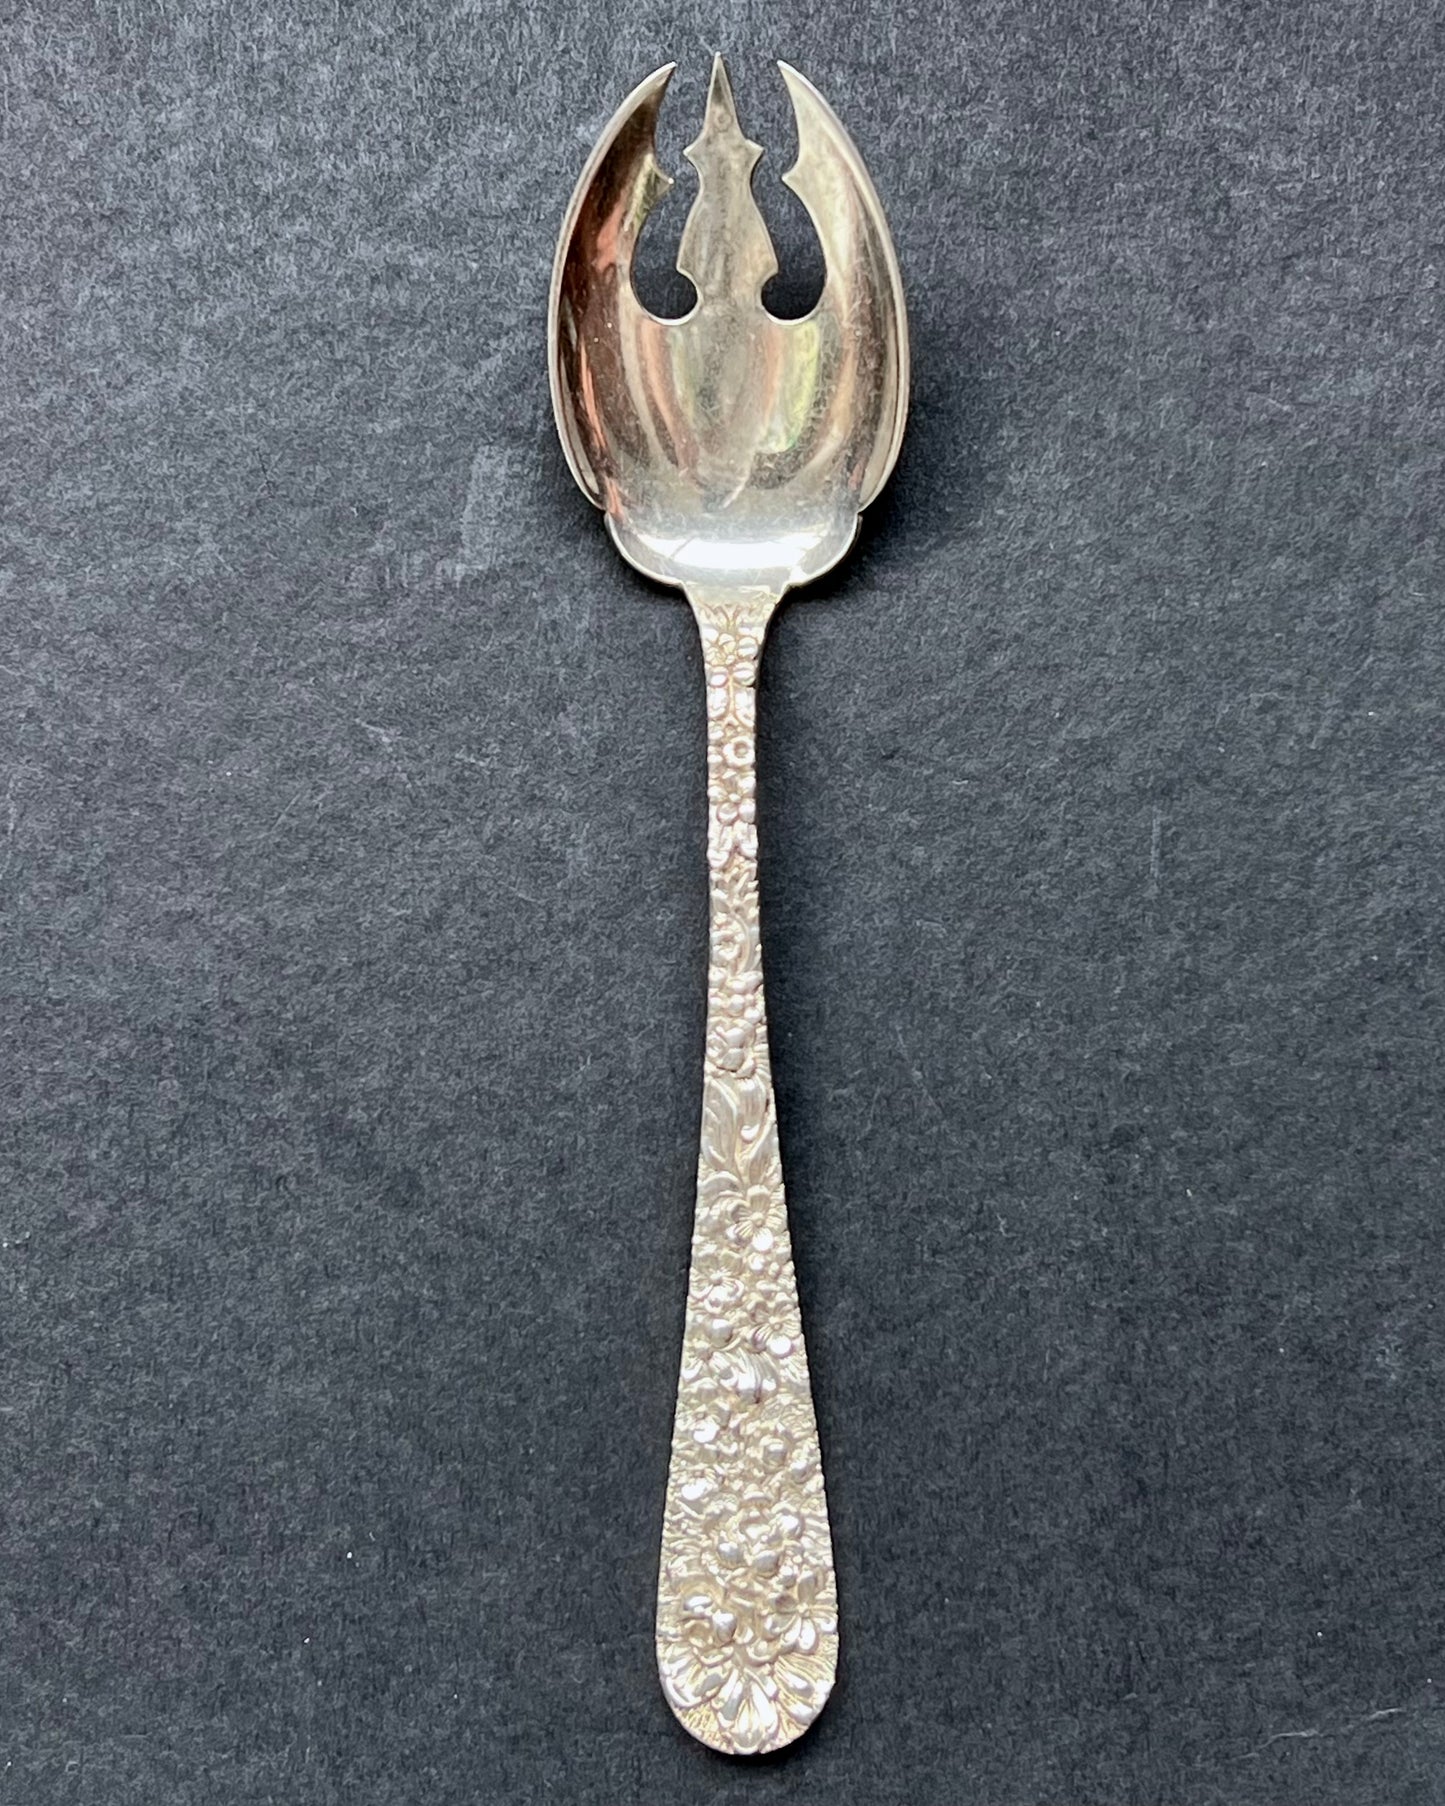 由马里兰州巴尔的摩的 Stieff 制作的复古 20 世纪 30 年代美国纯银玫瑰图案冰淇淋勺。